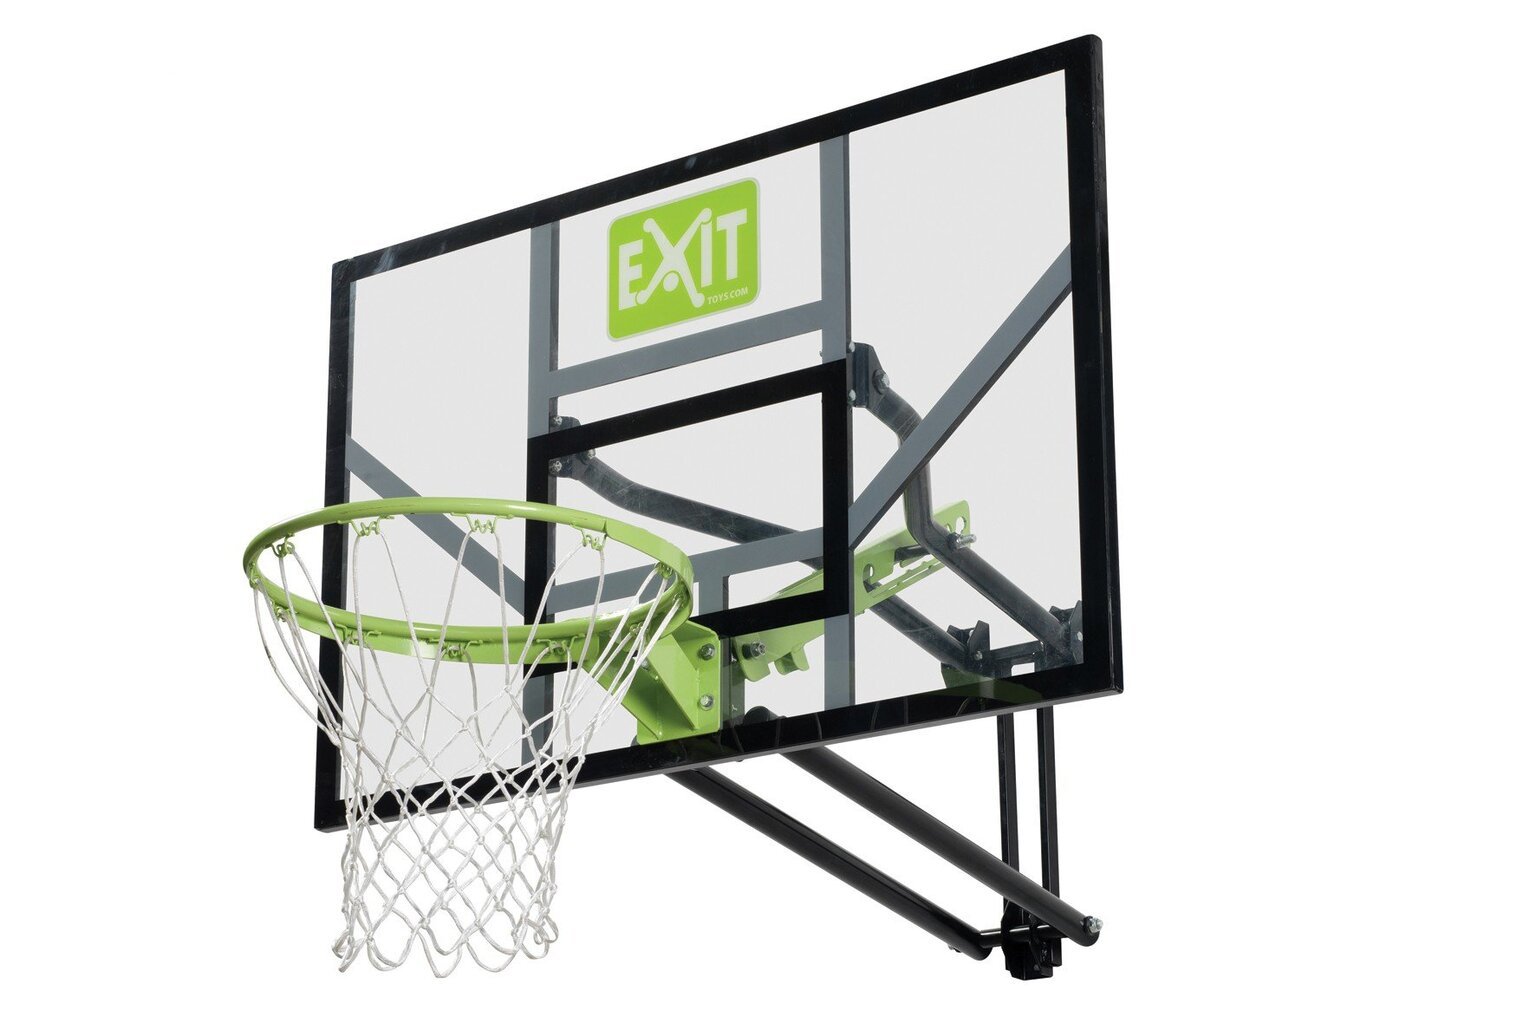 Krepšinio lenta su lanku ir tvirtinimo sistema Exit Galaxy kaina | pigu.lt